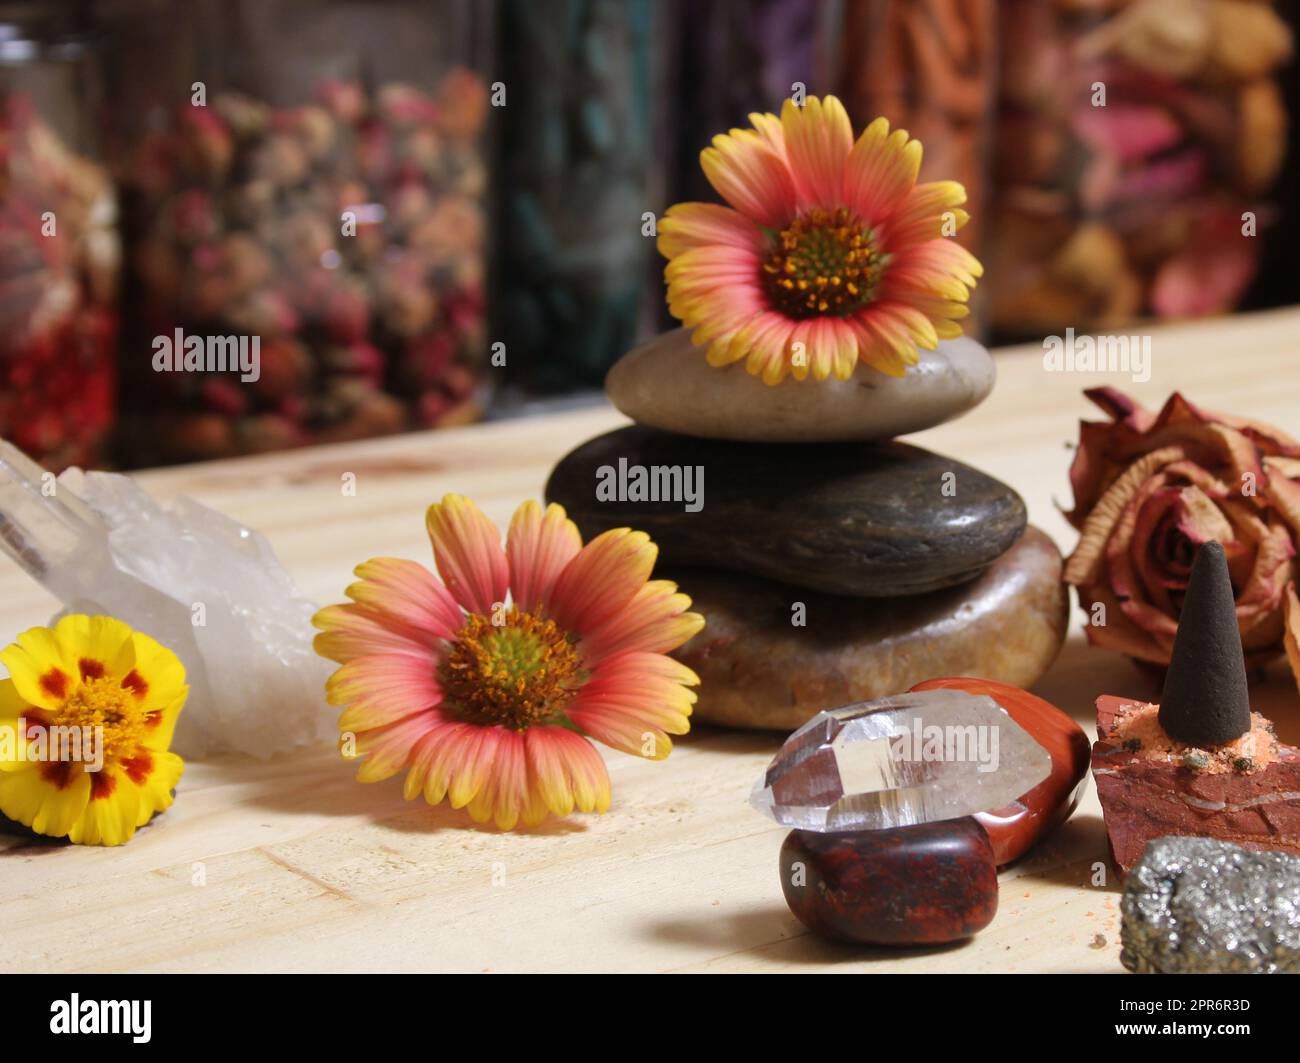 Cristallo di quarzo bilanciato su Bloodstone con fiori sullo sfondo DOF poco profondo Foto Stock